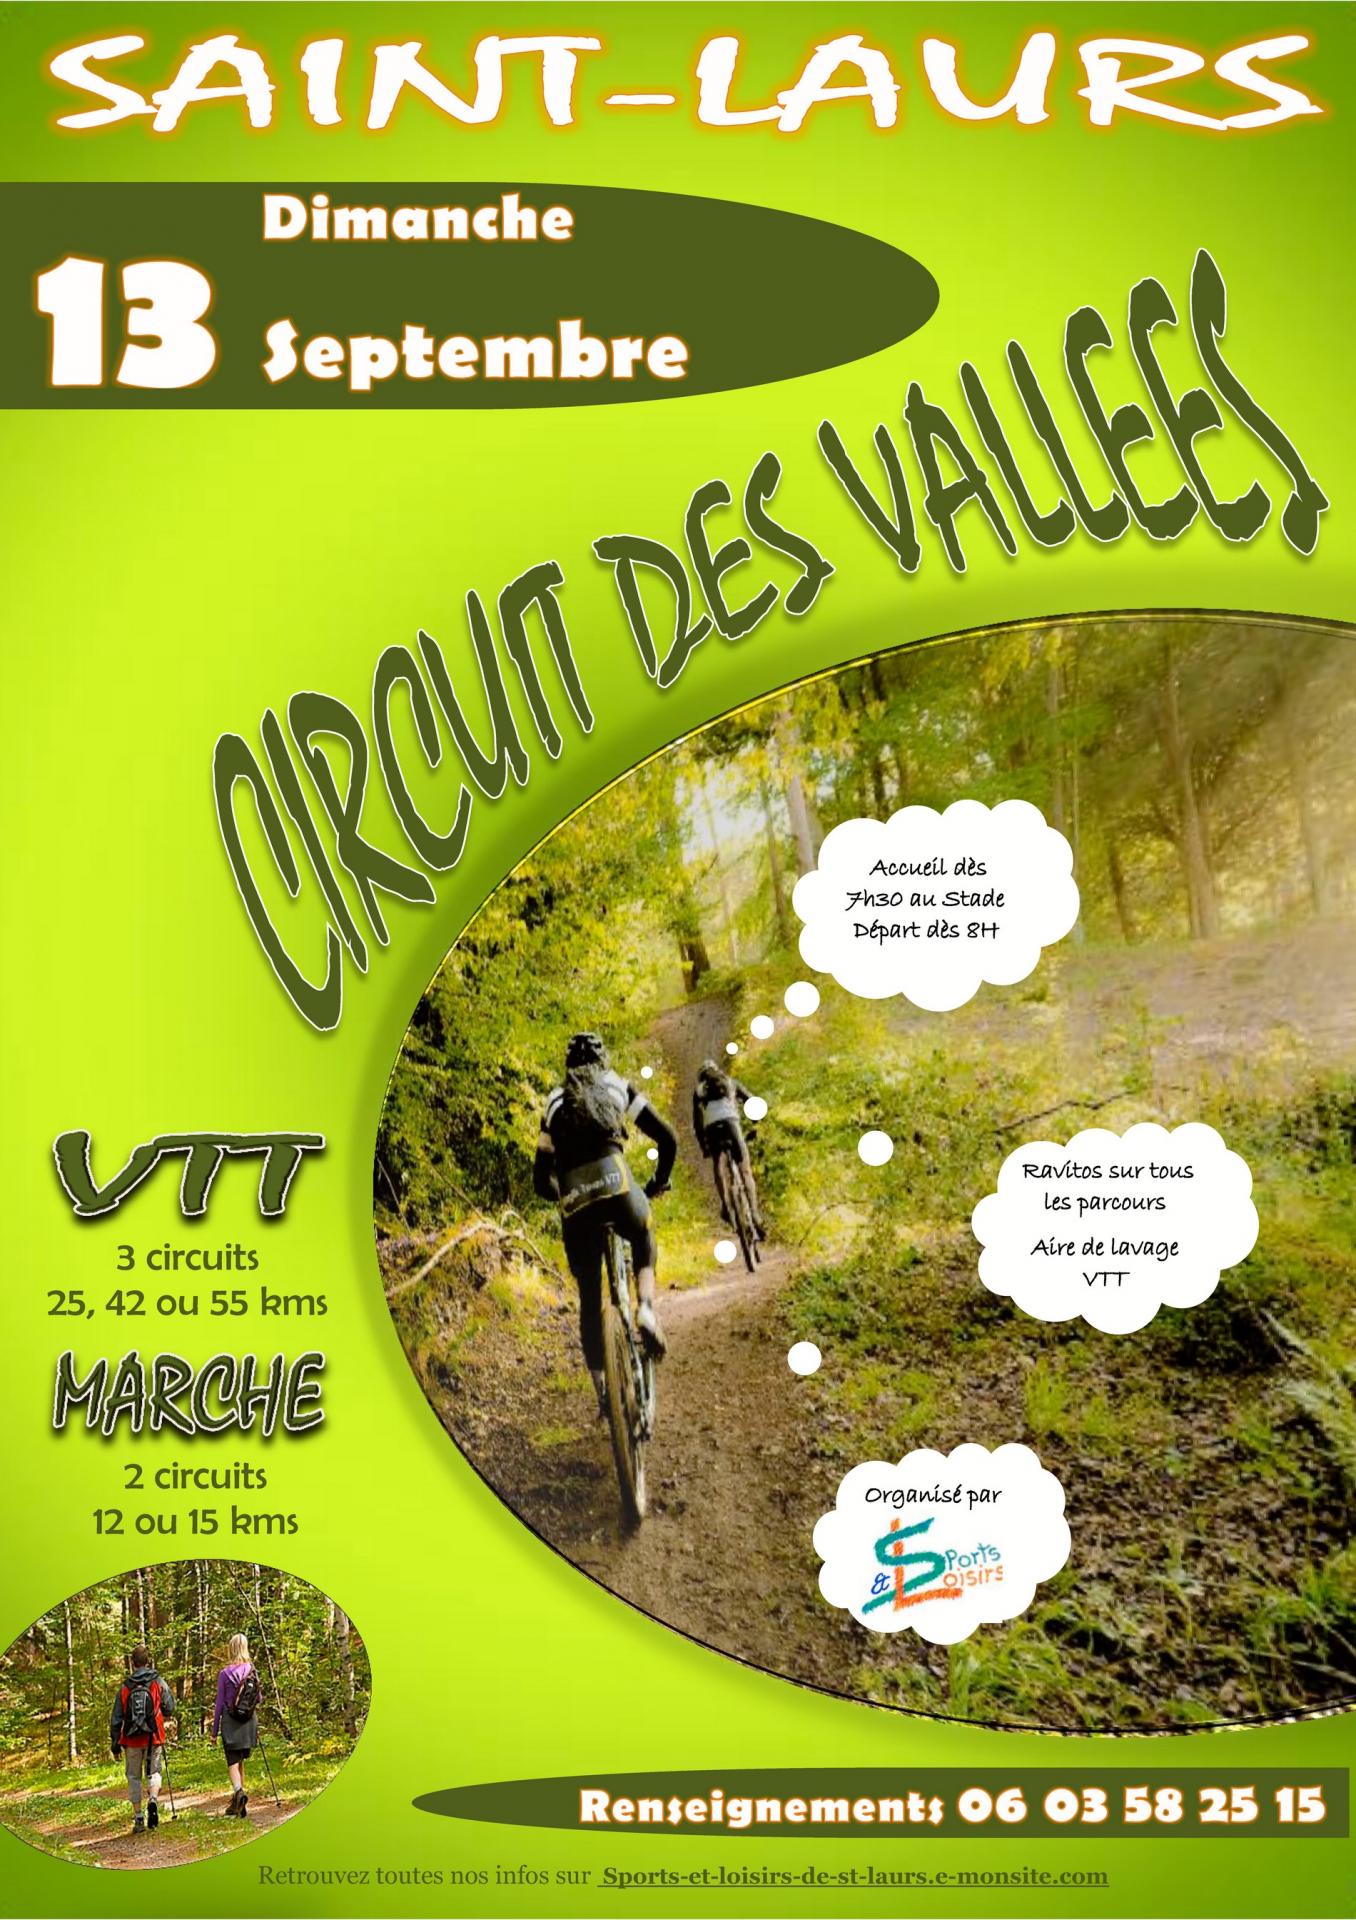 Saint-Laurs (79) 13 sept 2015 Affiche-circuit-des-vallees-2015